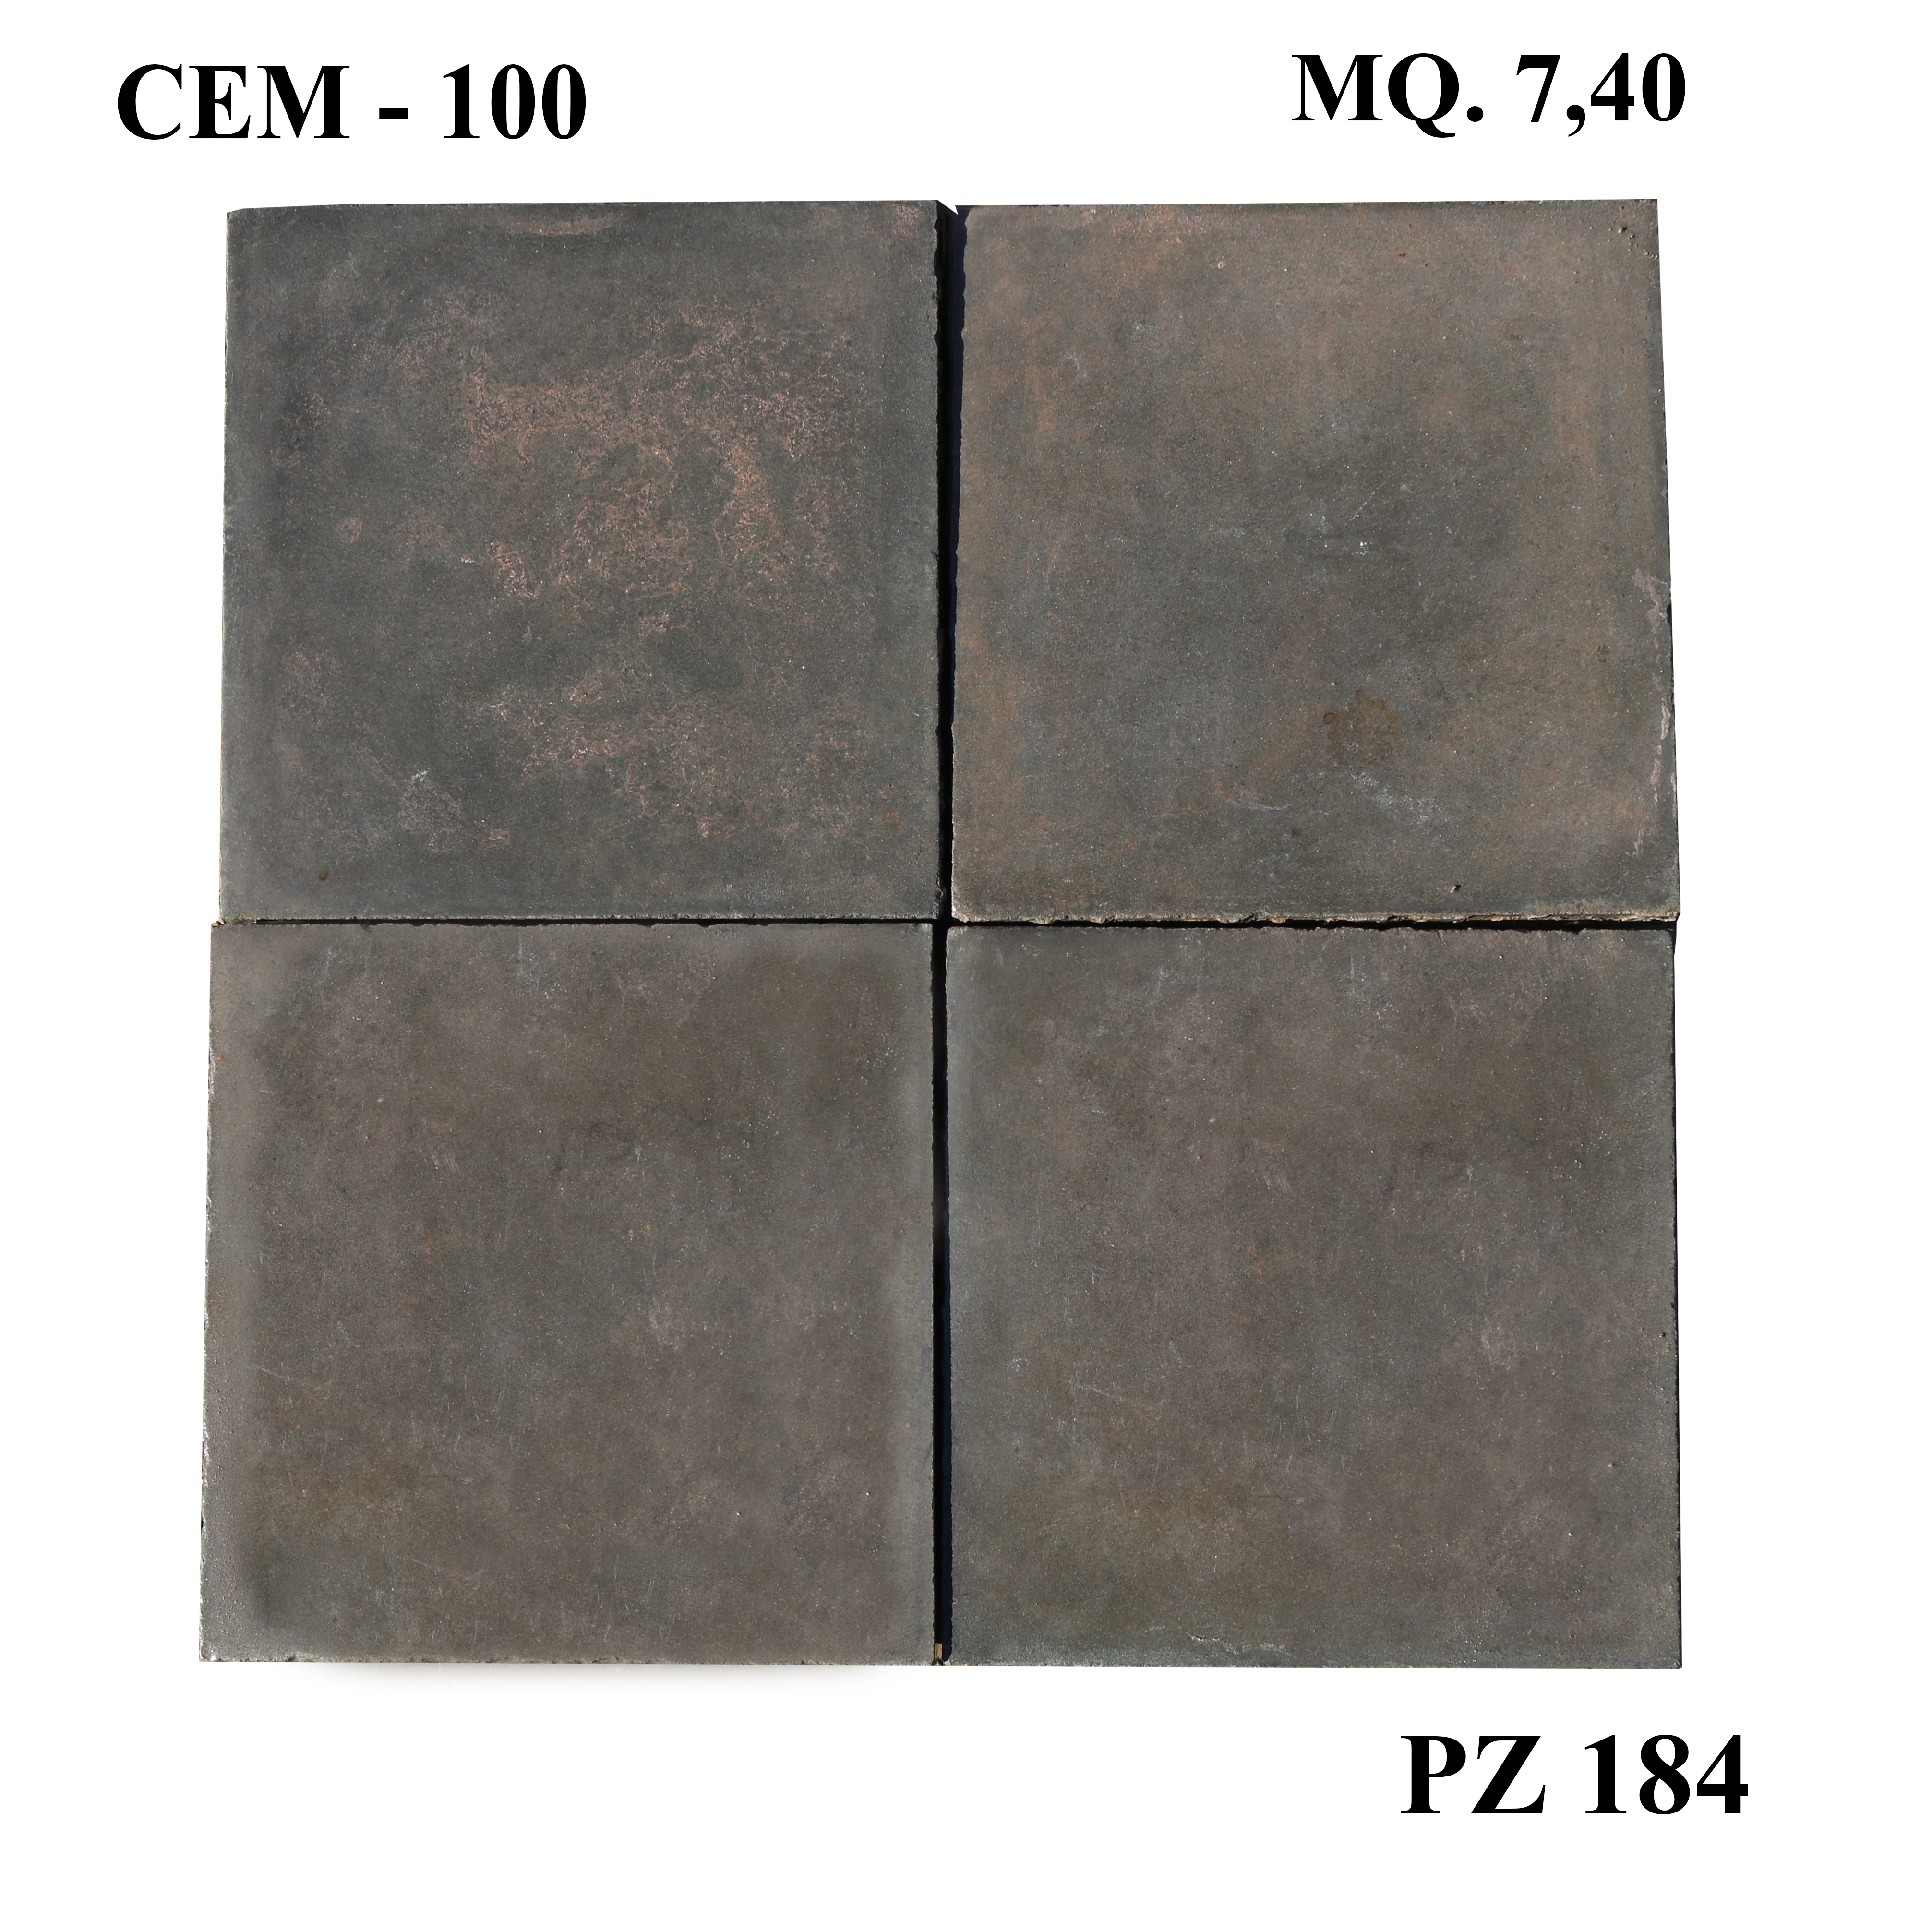 Antica pavimentazione in cementine cm 20x20. - Cementine e Graniglie - Pavimentazioni Antiche - Prodotti - Antichità Fiorillo